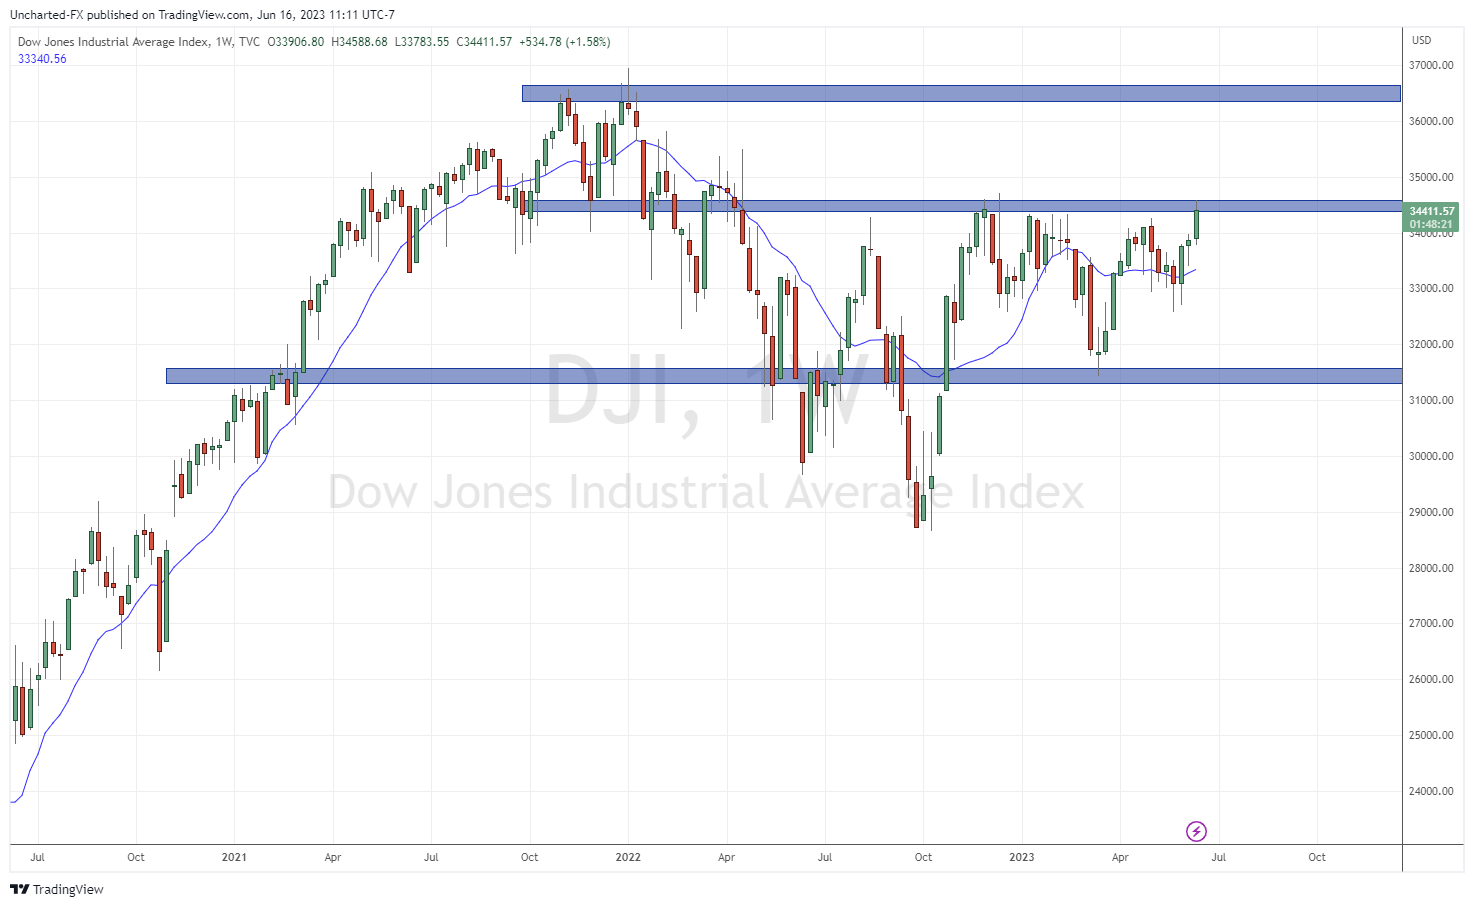 Dow Jones Industrial Average Index